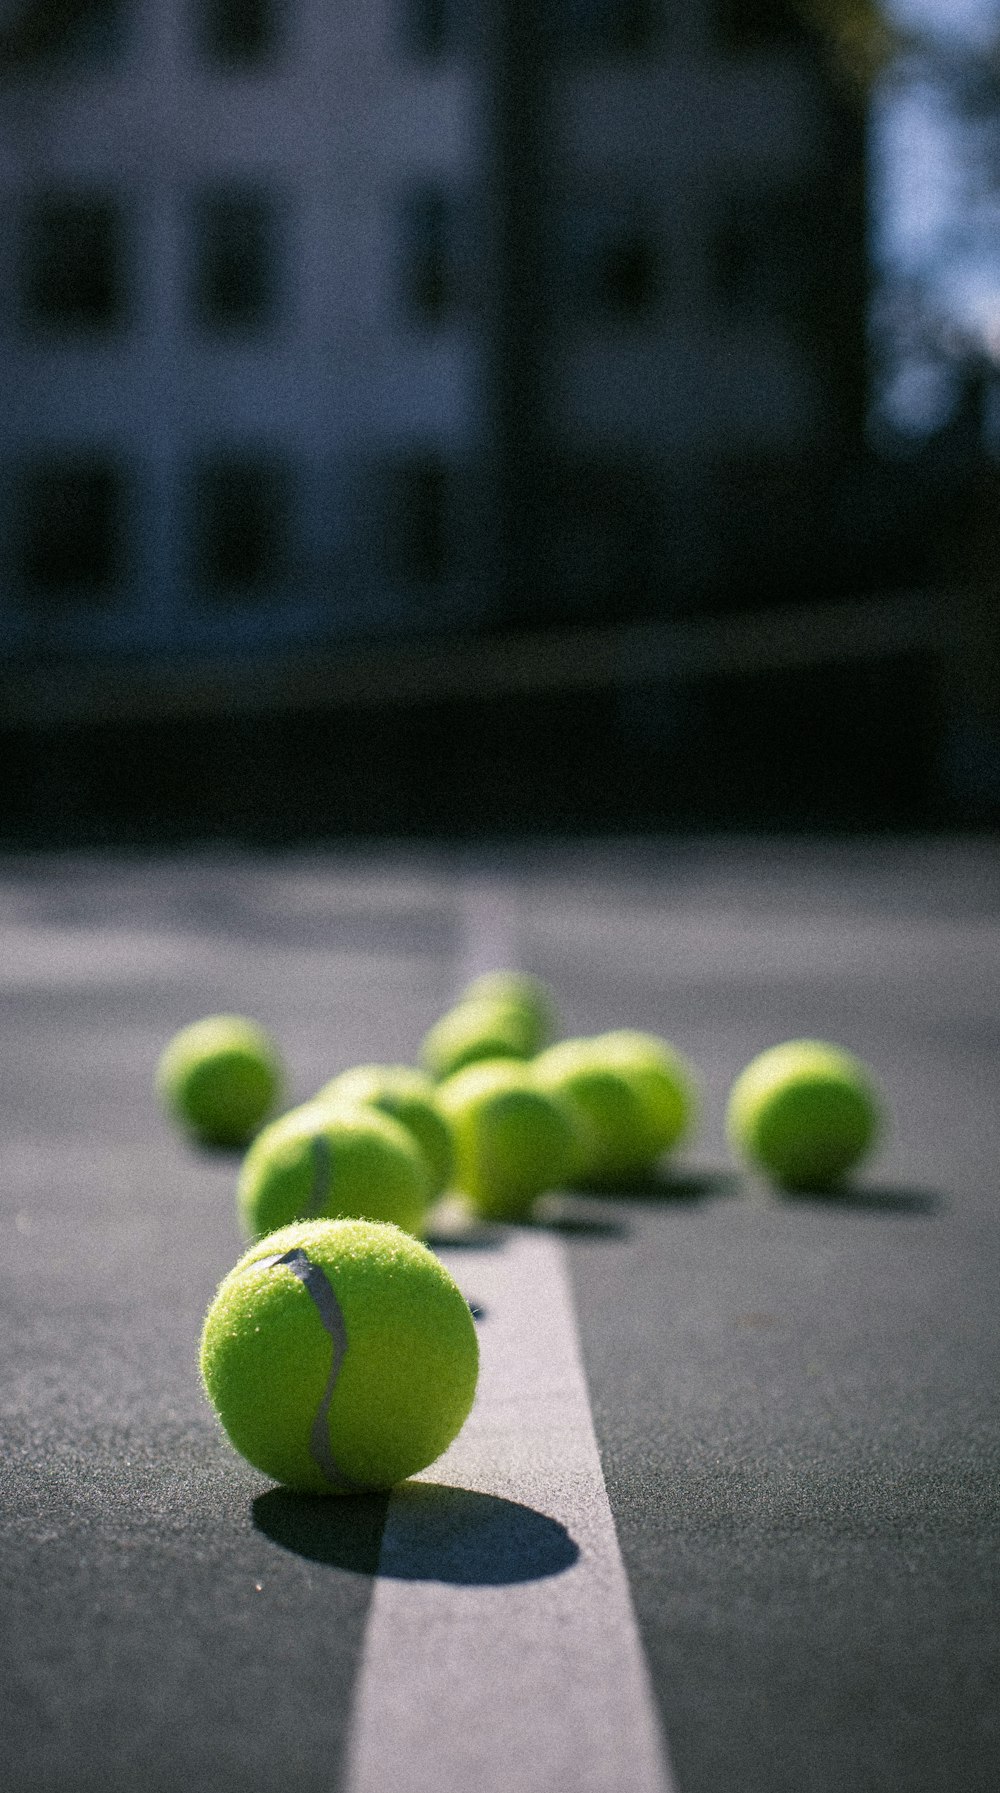 pallina da tennis verde su pavimento di cemento grigio